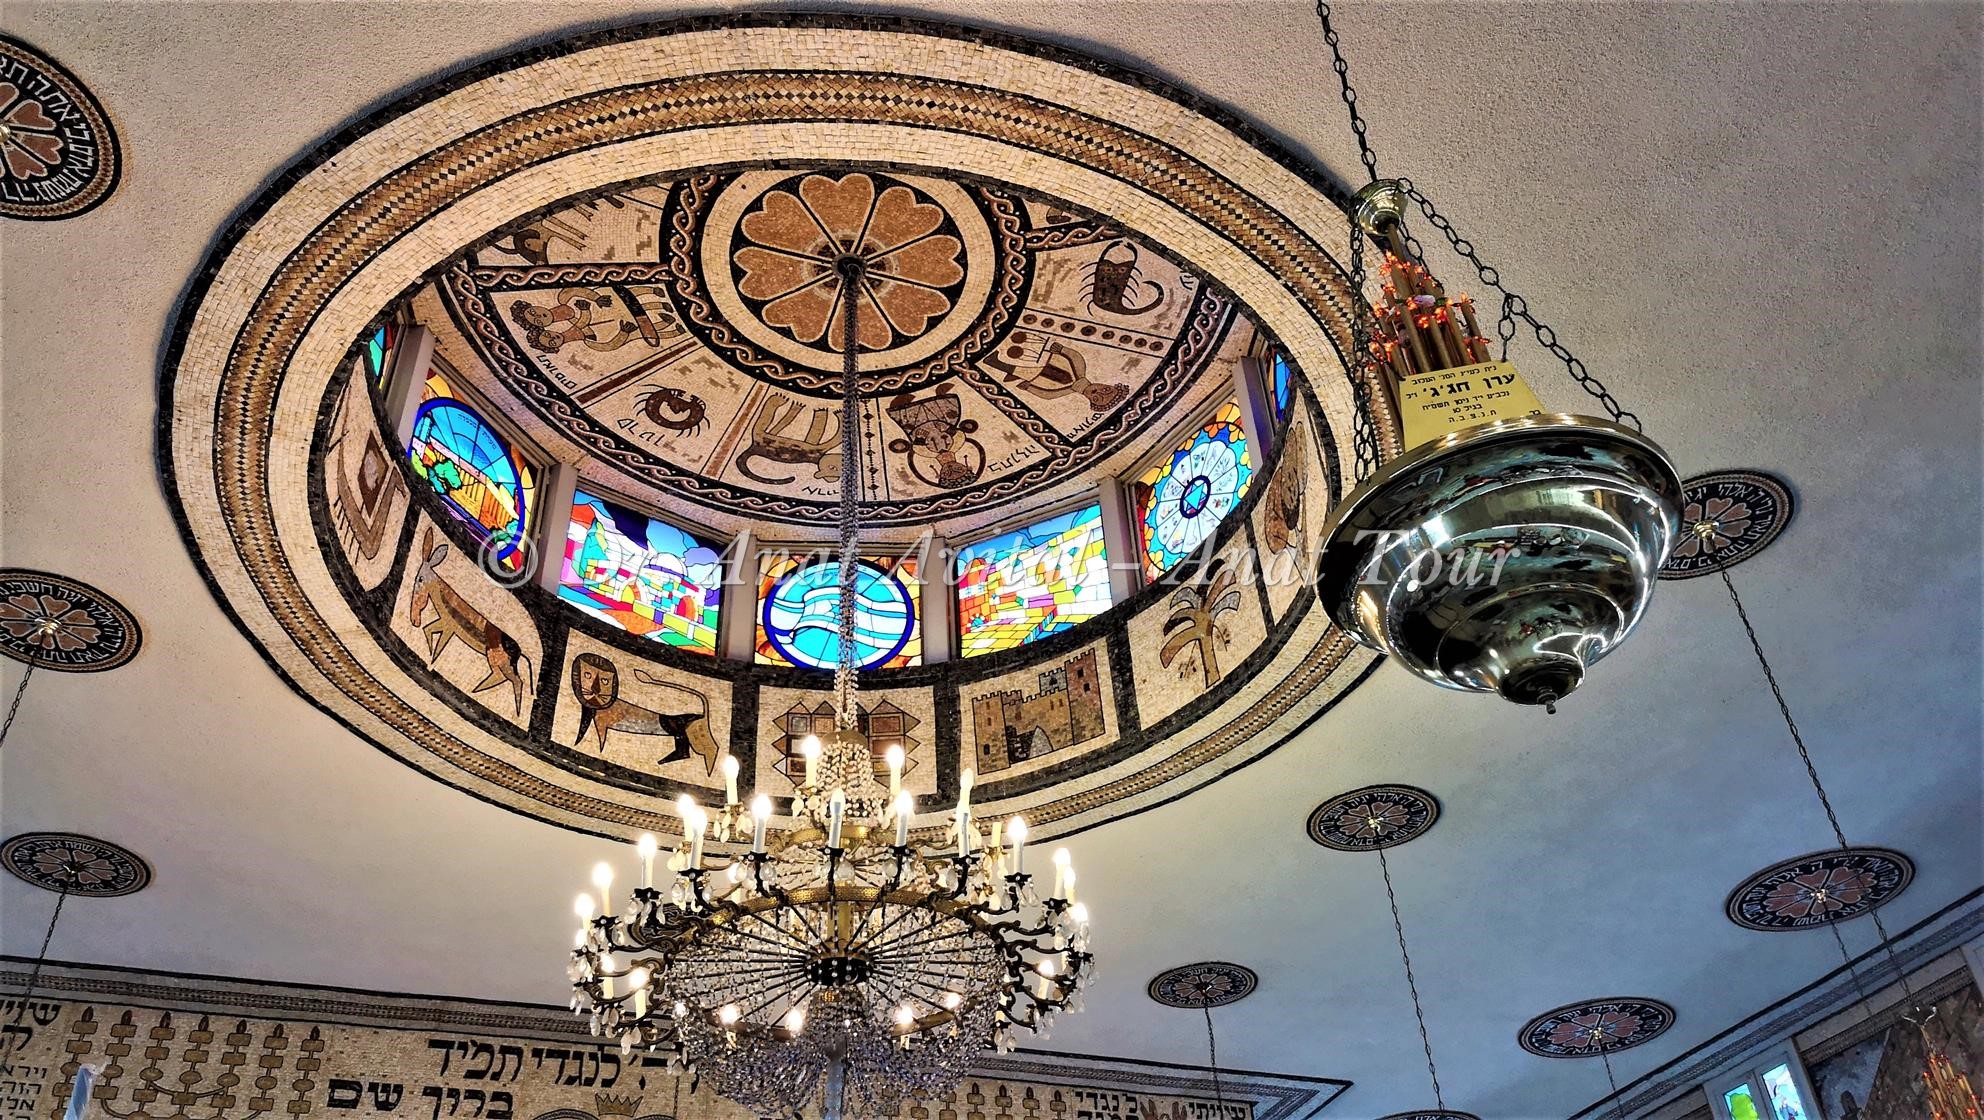 בית הכנסת הטוניסאי עם הפסיפסים, "אור תורה" בעכו (ד"ר ענת אביטל)